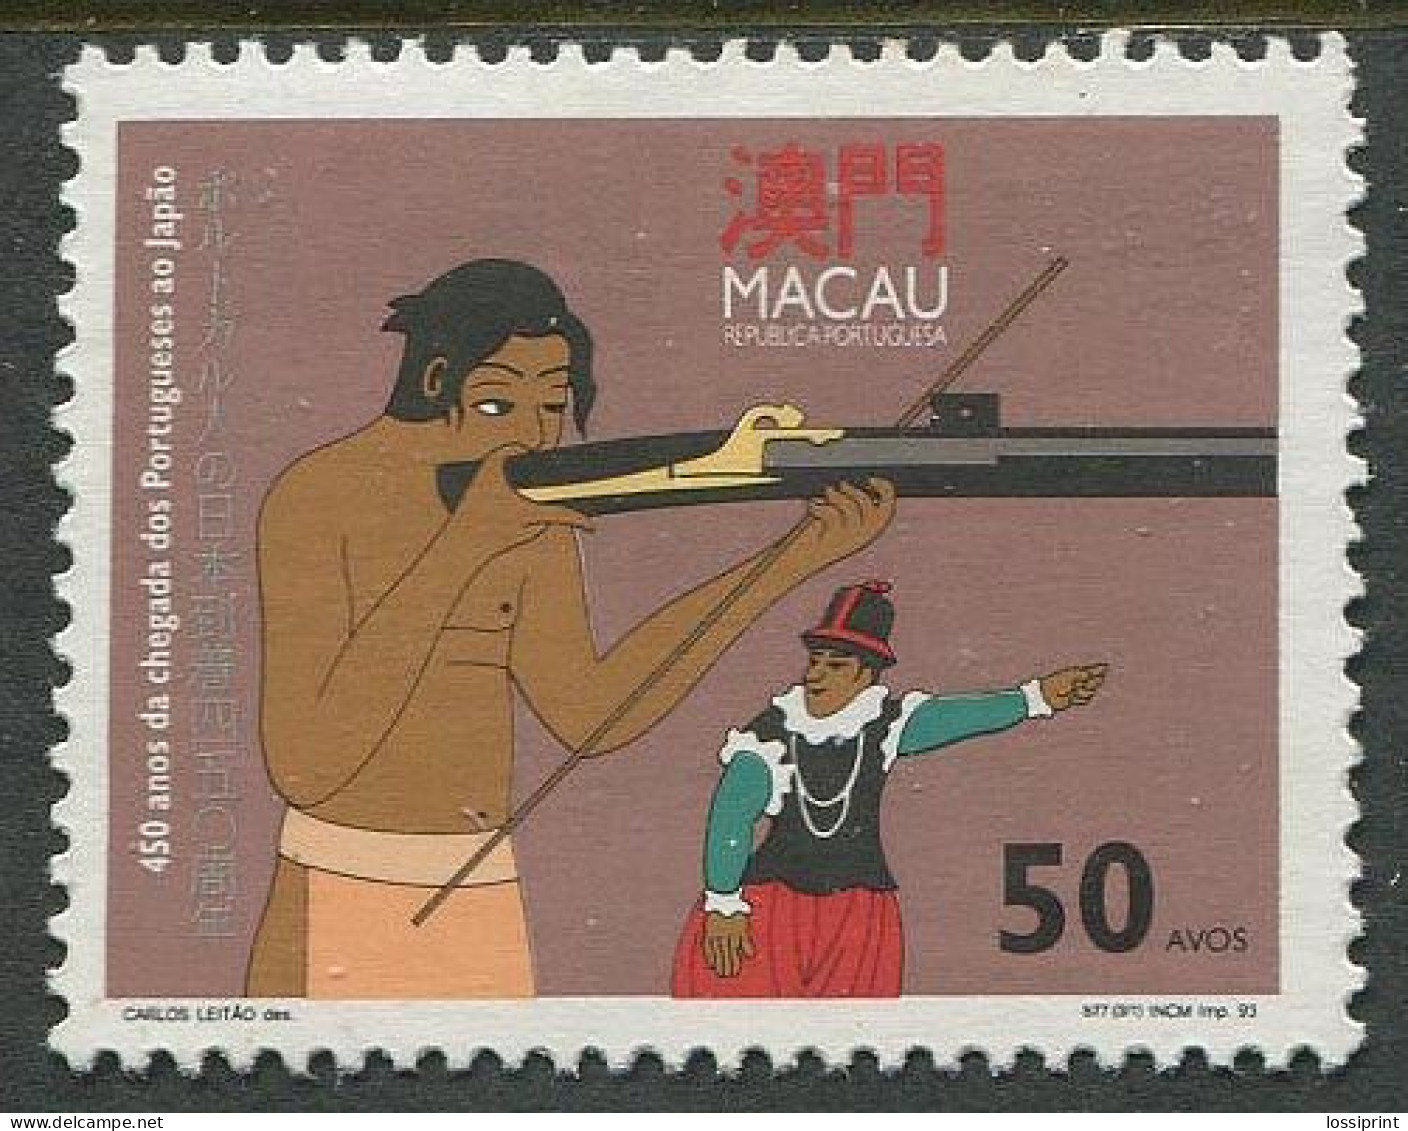 Macau:Unused Stamp Shooting, 1993, MNH - Tiro (armas)